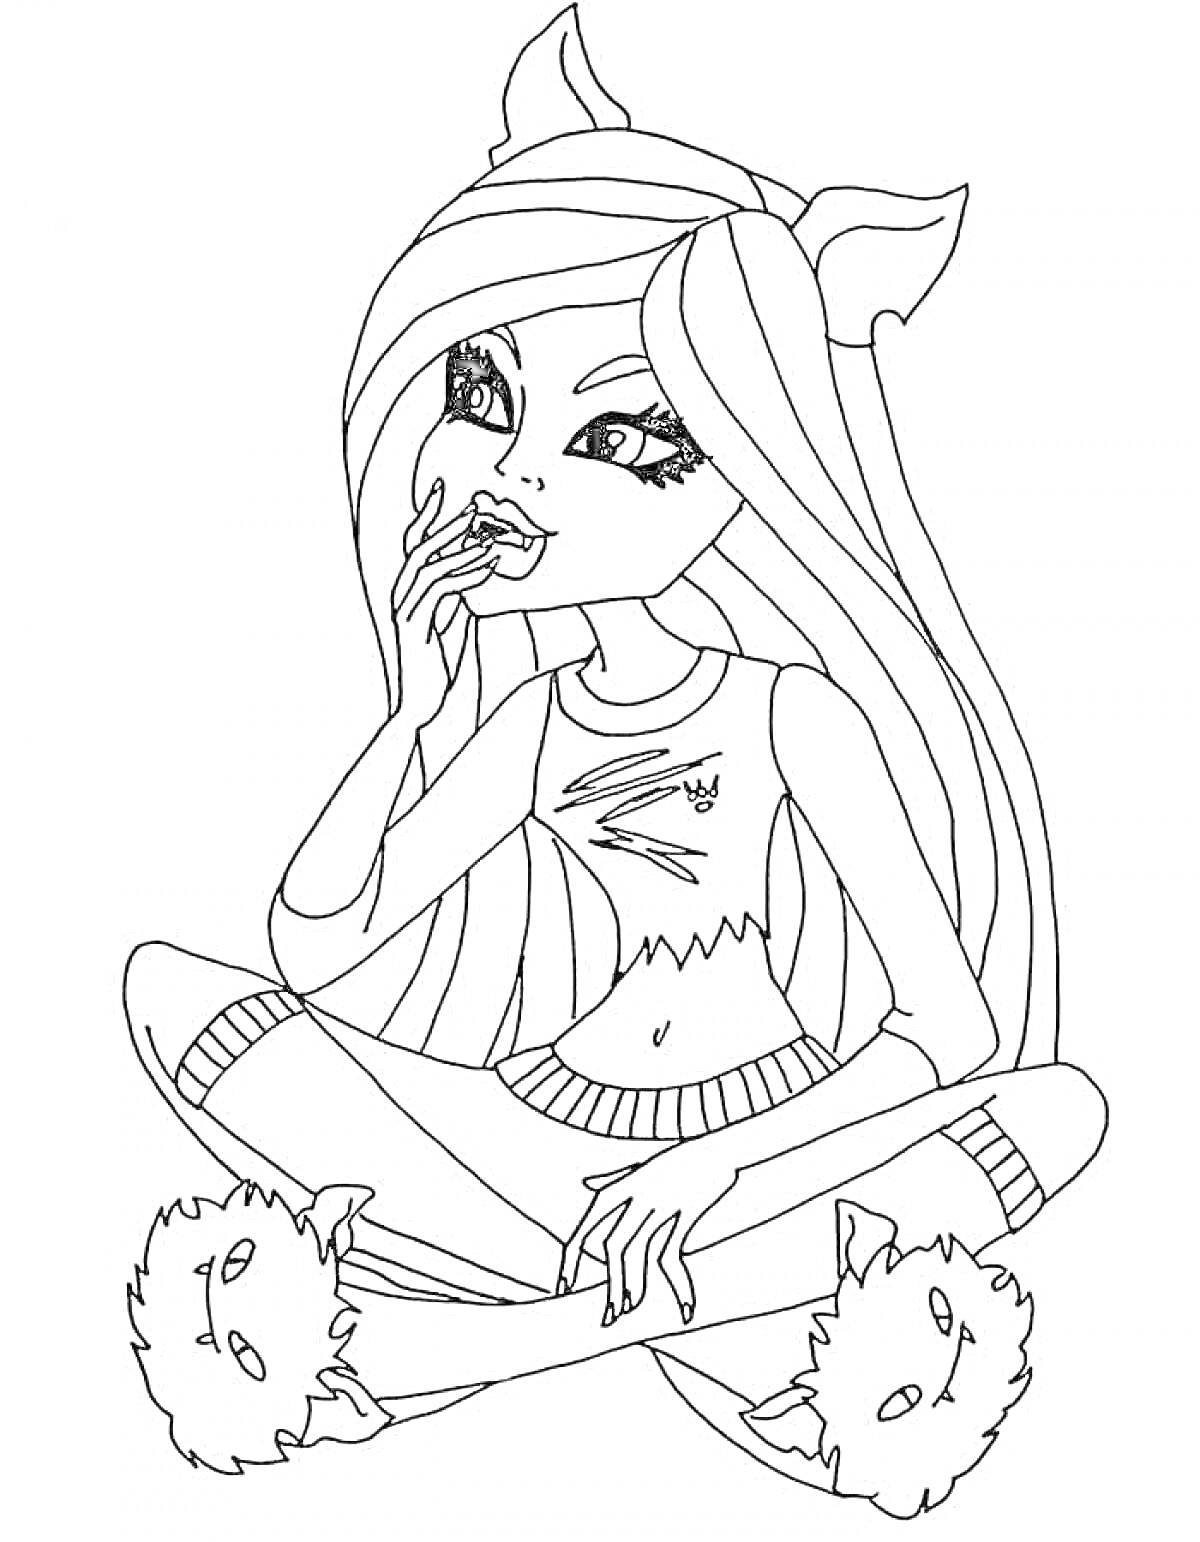 Раскраска Девушка Монстер Хай с длинными волосами в костюме с кошачьими ушками, сидящая в позе лотоса и грызущая ноготь, в тапочках с мордашками животных.